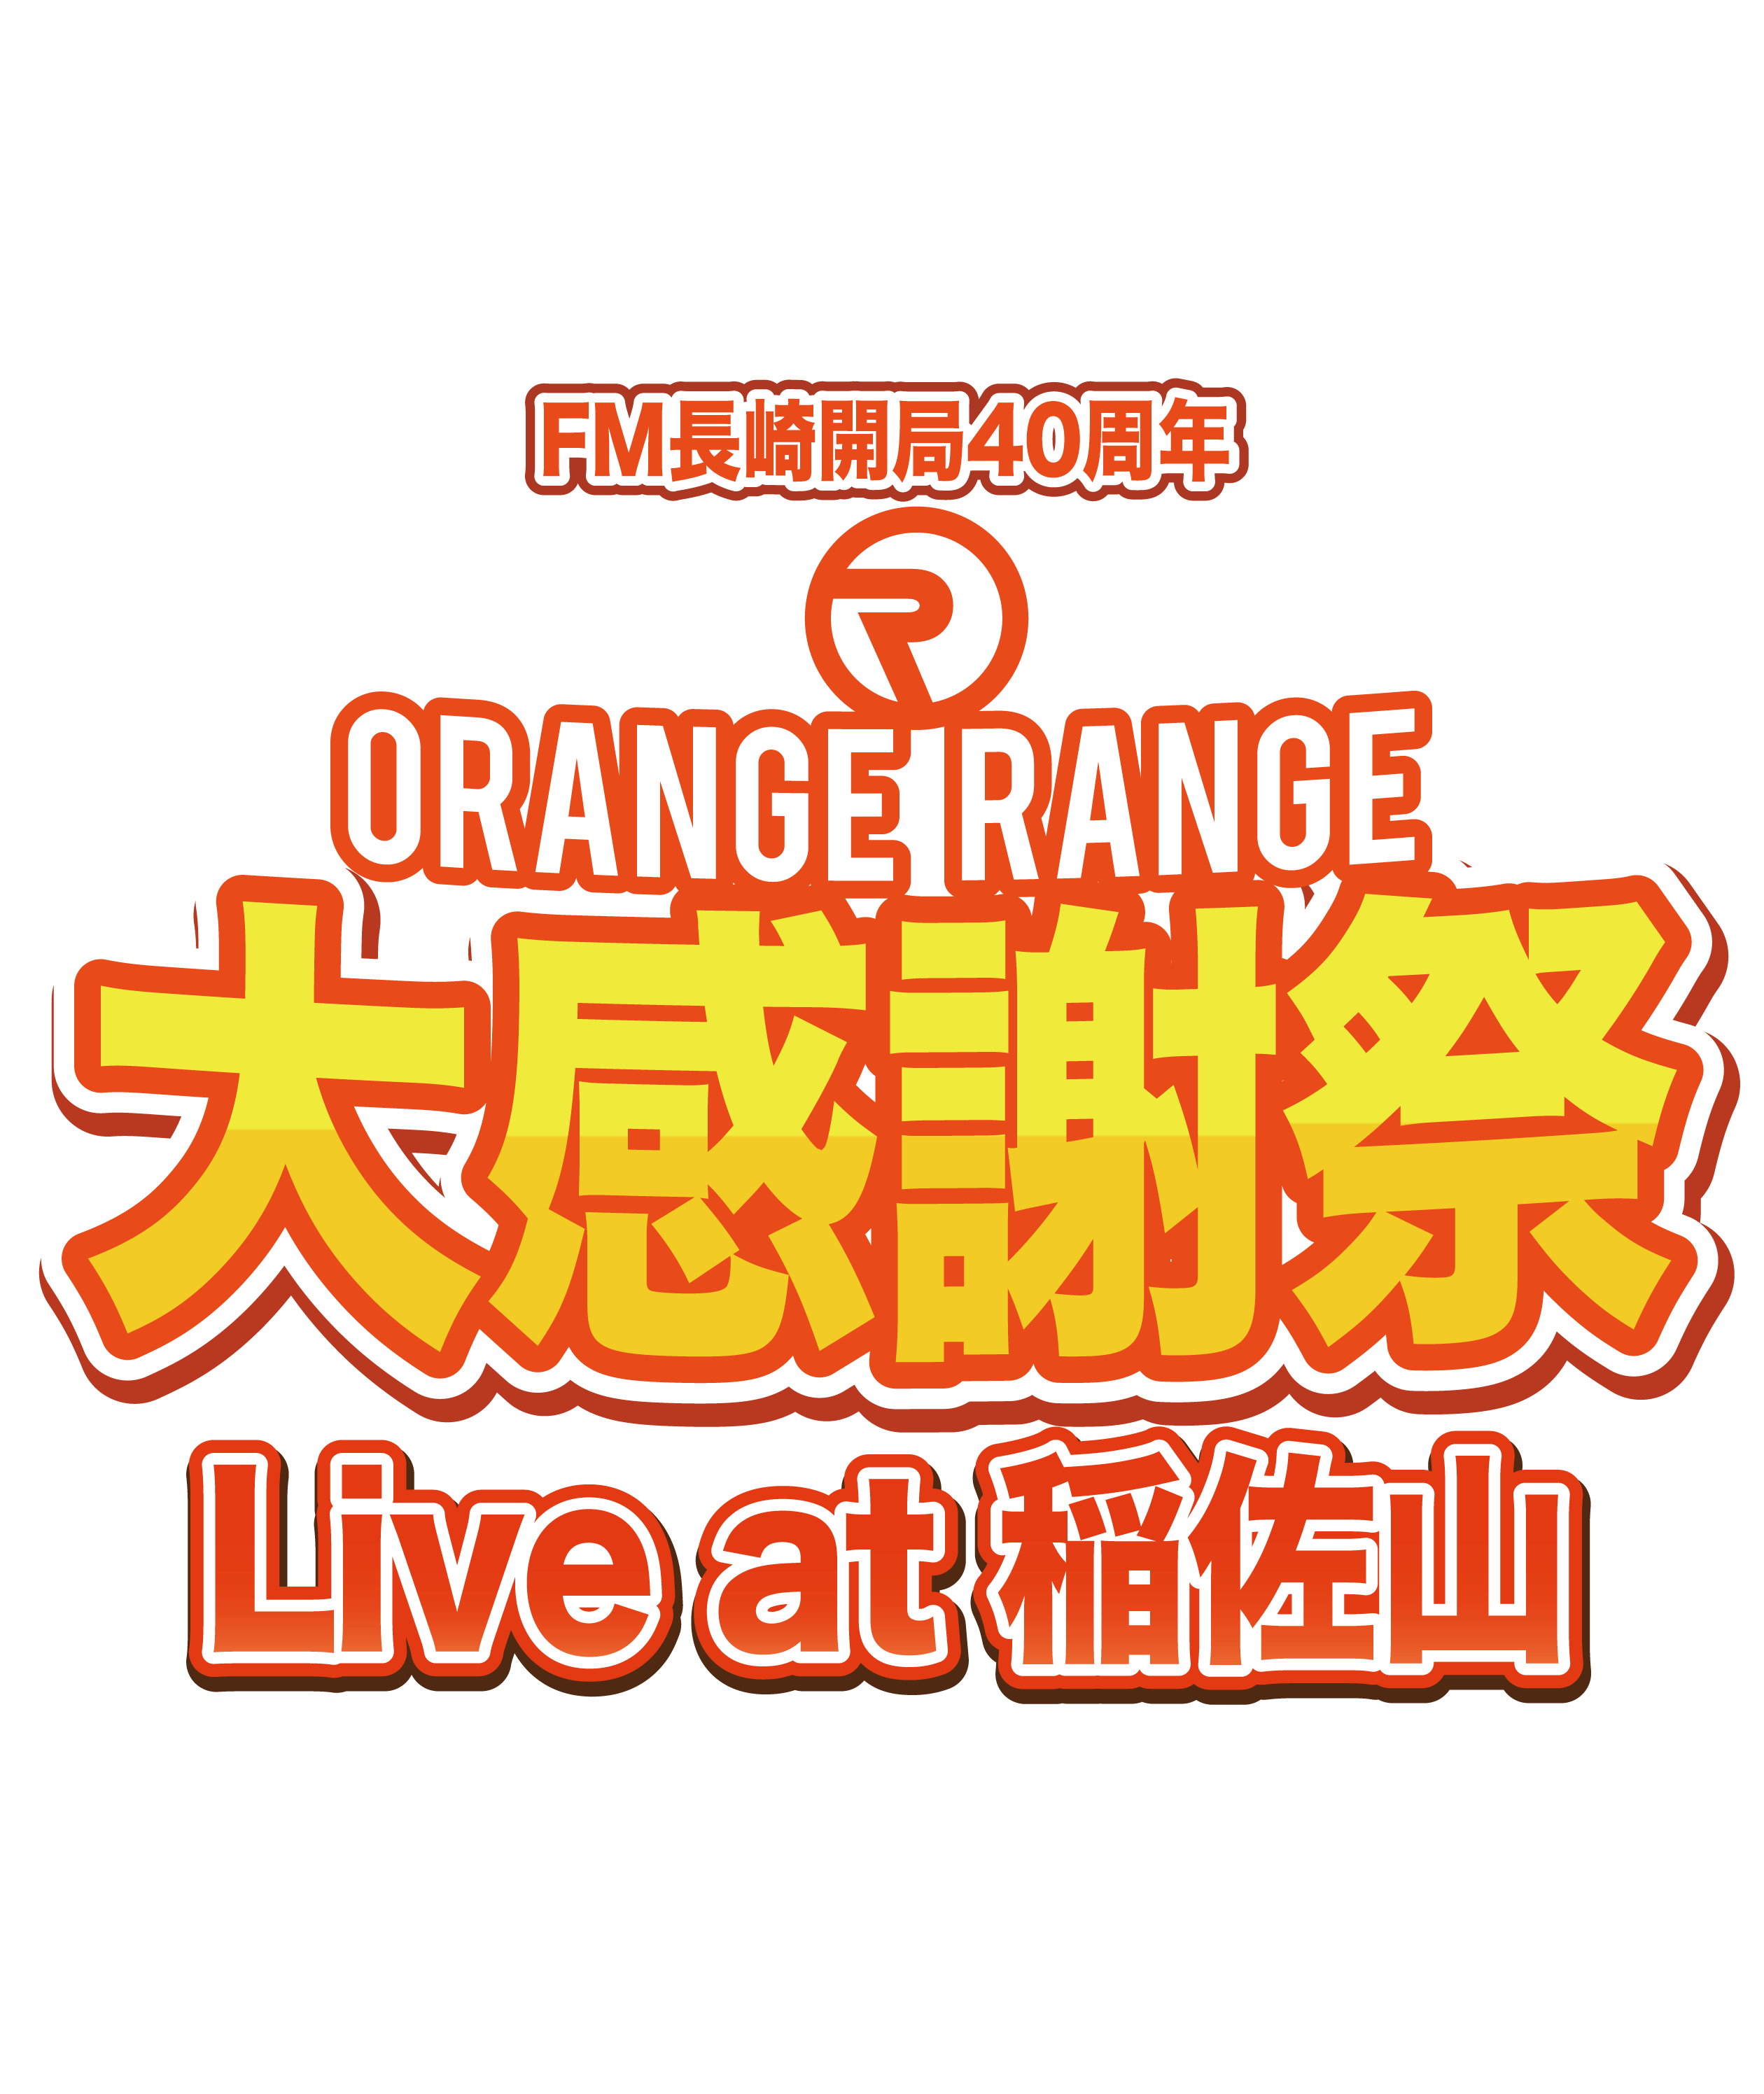 ORANGE RANGE オレンジレンジ レンジ ツアー グッズ タオル 